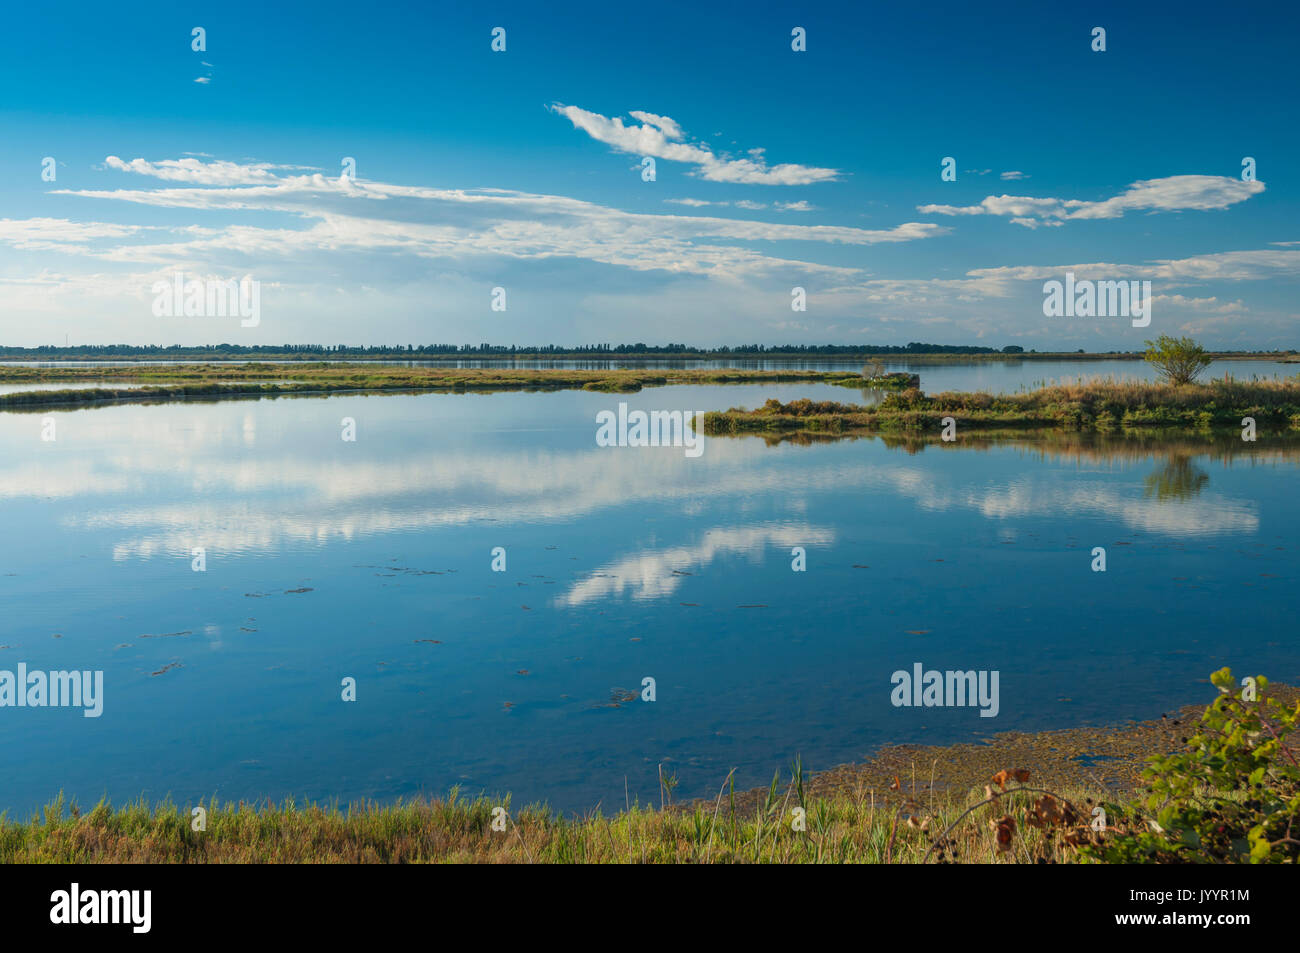 El paisaje de la laguna en el delta del Po river national park, Mar Adriático, Rosolina, Rovigo, Italia. Adoptada el 12 de agosto de 2017. Foto de stock